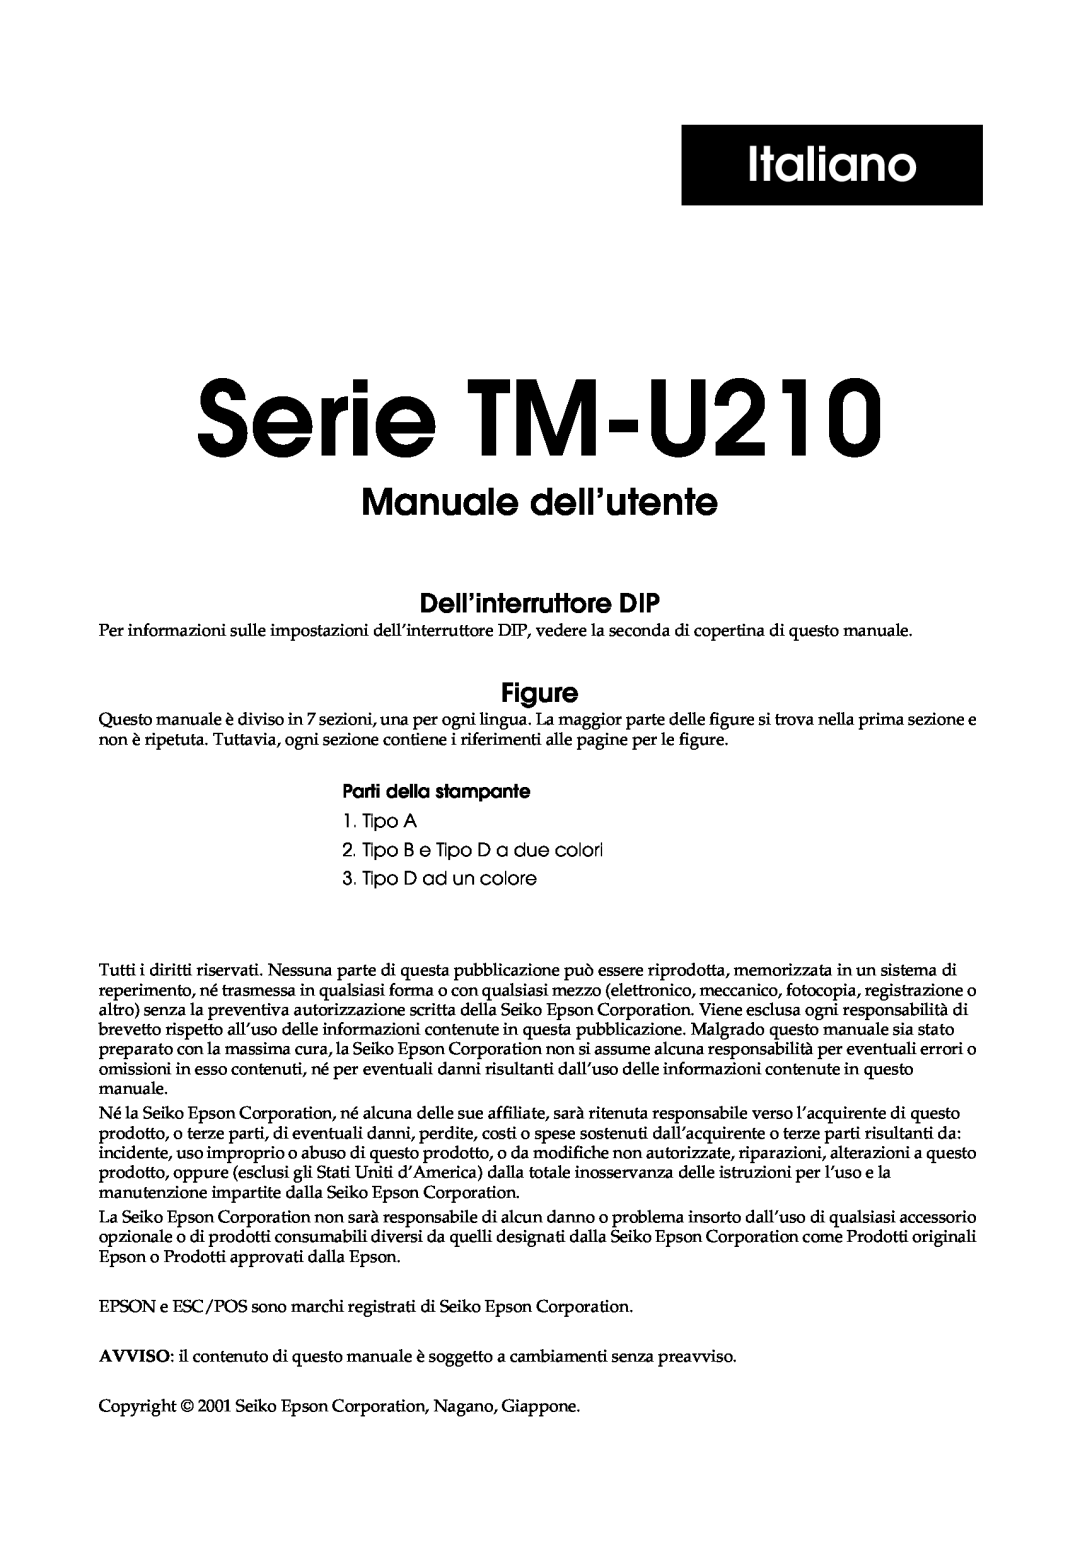 Epson TM-U210 Series, M119B, M119D, M119A, TM-U210B Italiano, Serie TM-U210 Manuale dell’utente, Dell’interruttore DIP 